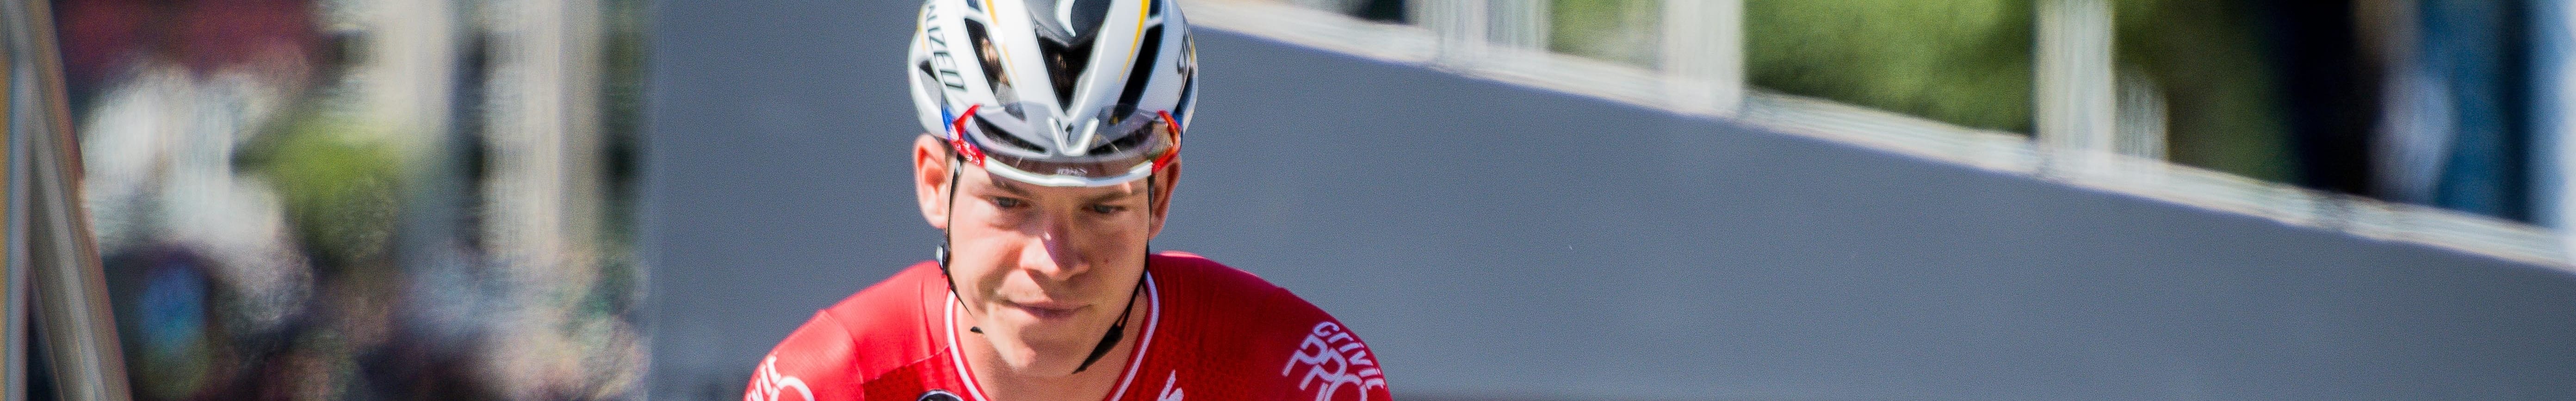 Giro d'Italia, tappa 12: Nibali e Jungels tra i candidati per la tappa che fu di Fausto Coppi